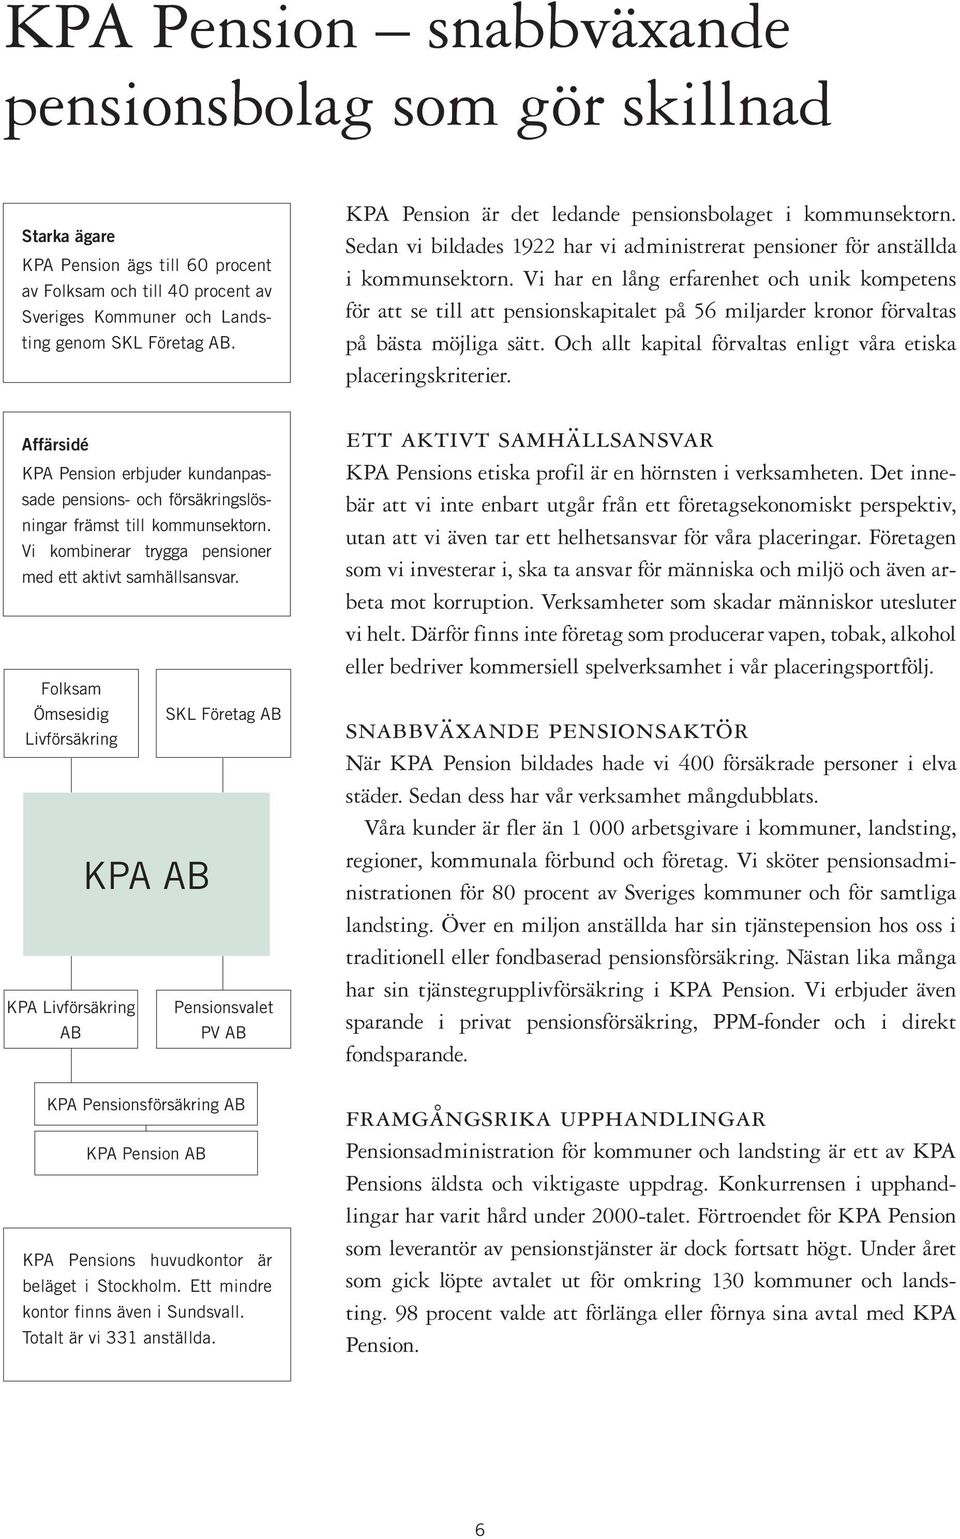 Folksam Ömsesidig SKL Företag AB Livförsäkring KPA AB KPA Livförsäkring Pensionsvalet AB PV AB KPA Pensionsförsäkring AB KPA Pension AB KPA Pensions huvudkontor är beläget i Stockholm.